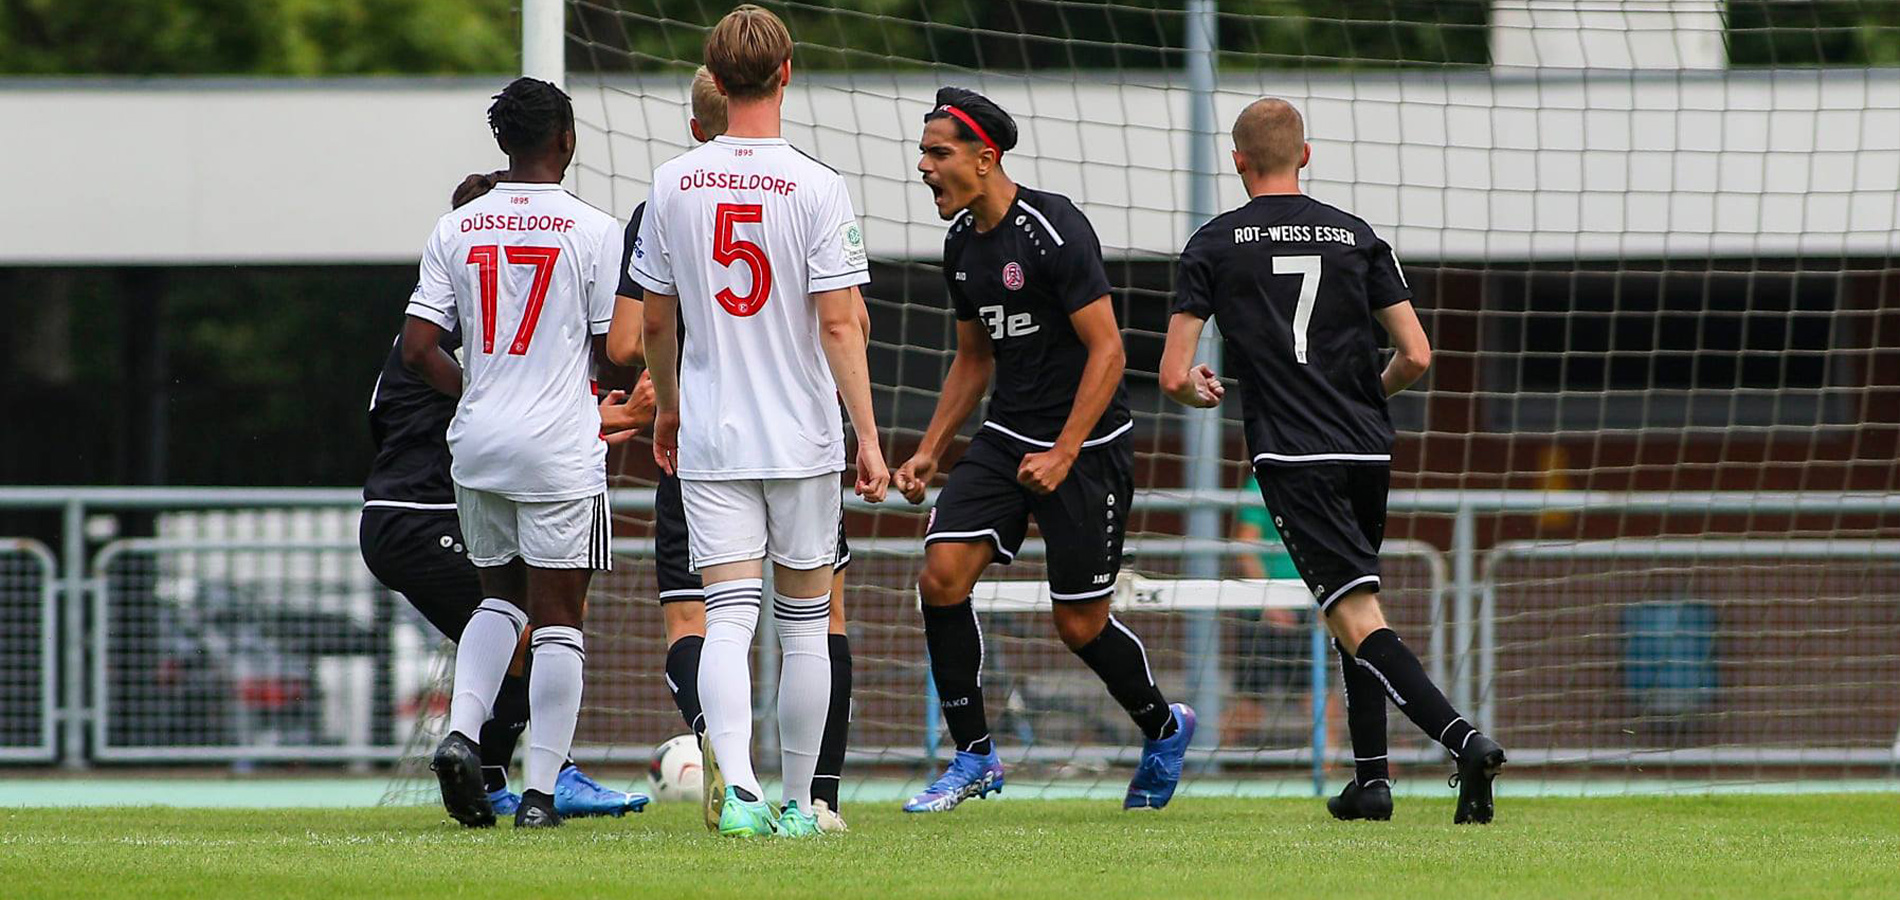 Drei Spiele, drei Siege: Erfolgreiche NRW-Liga-Gruppenphase für die rot-weisse U19. (Archivfoto: Breilmannswiese)